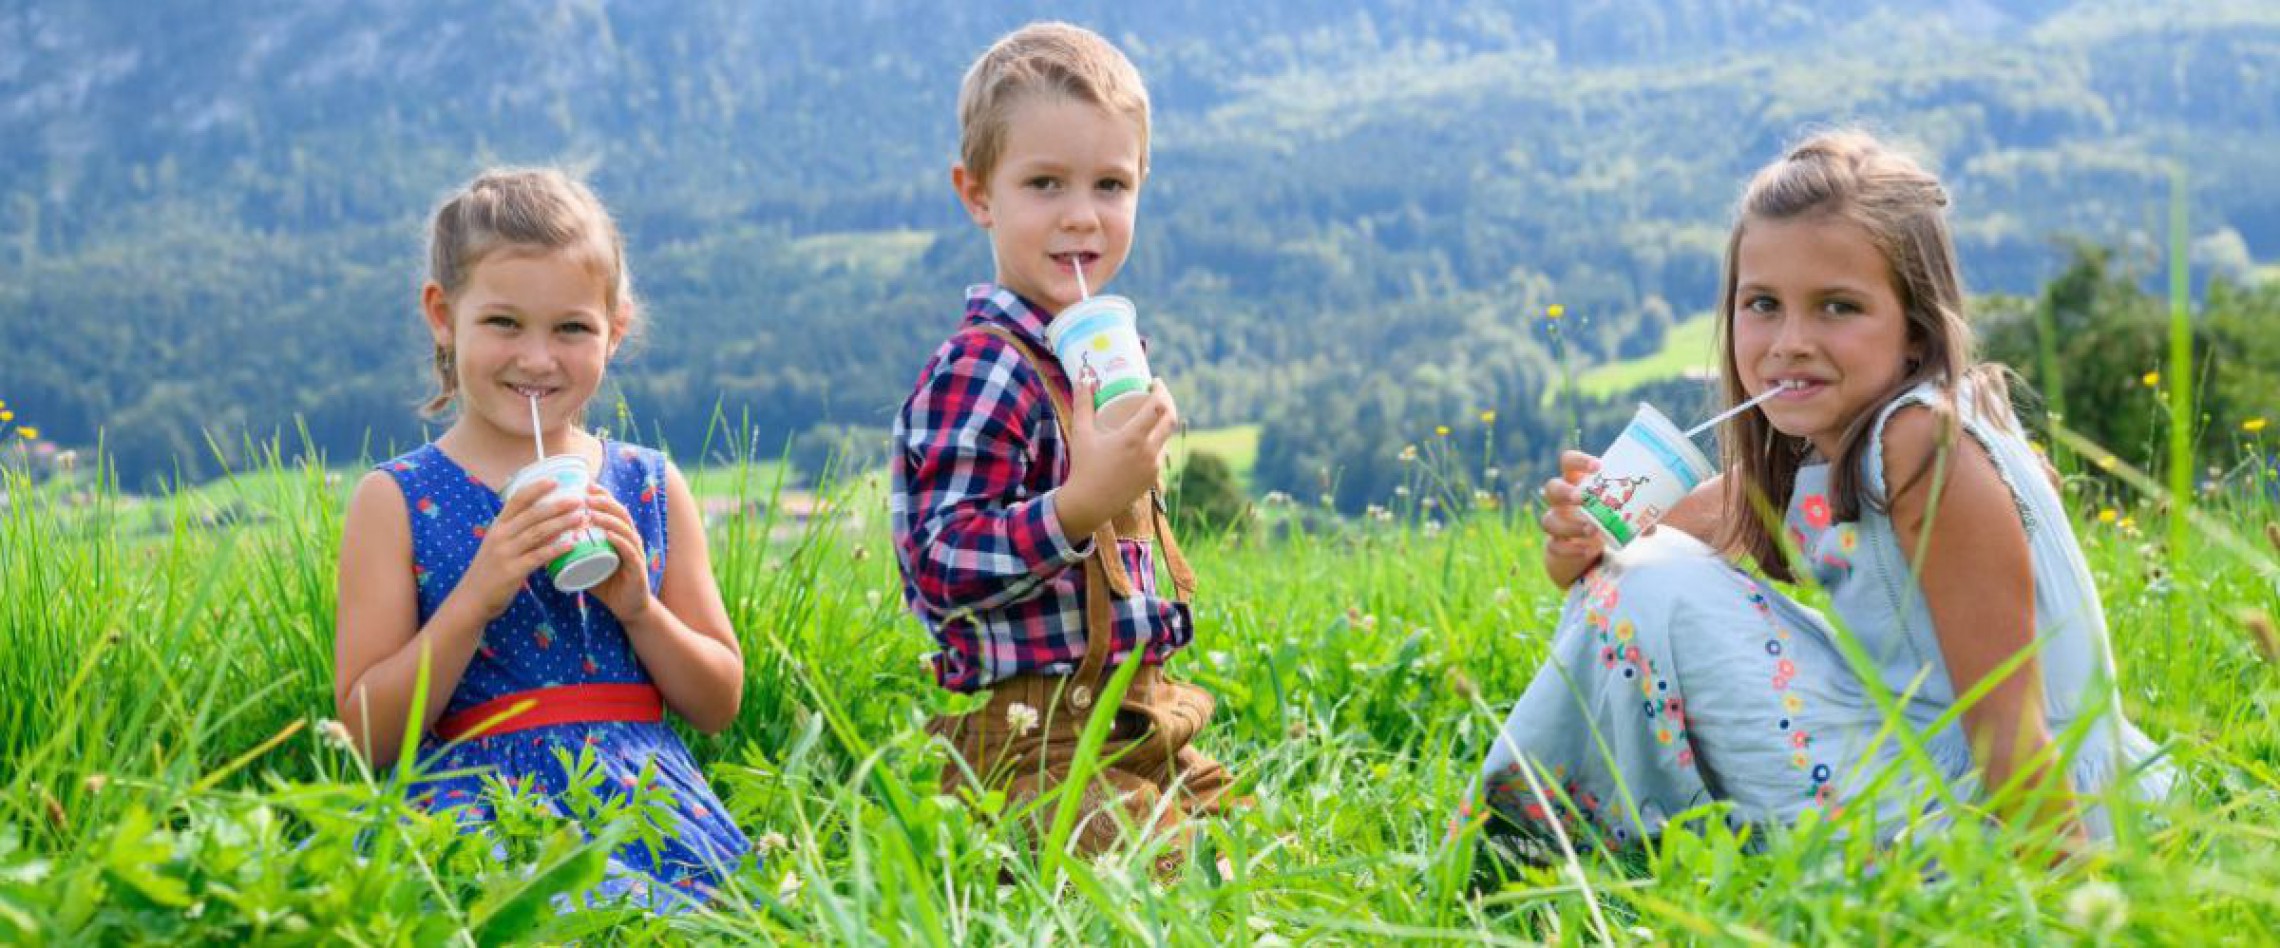 Kinder im Gras mit Schulmilch in der Hand